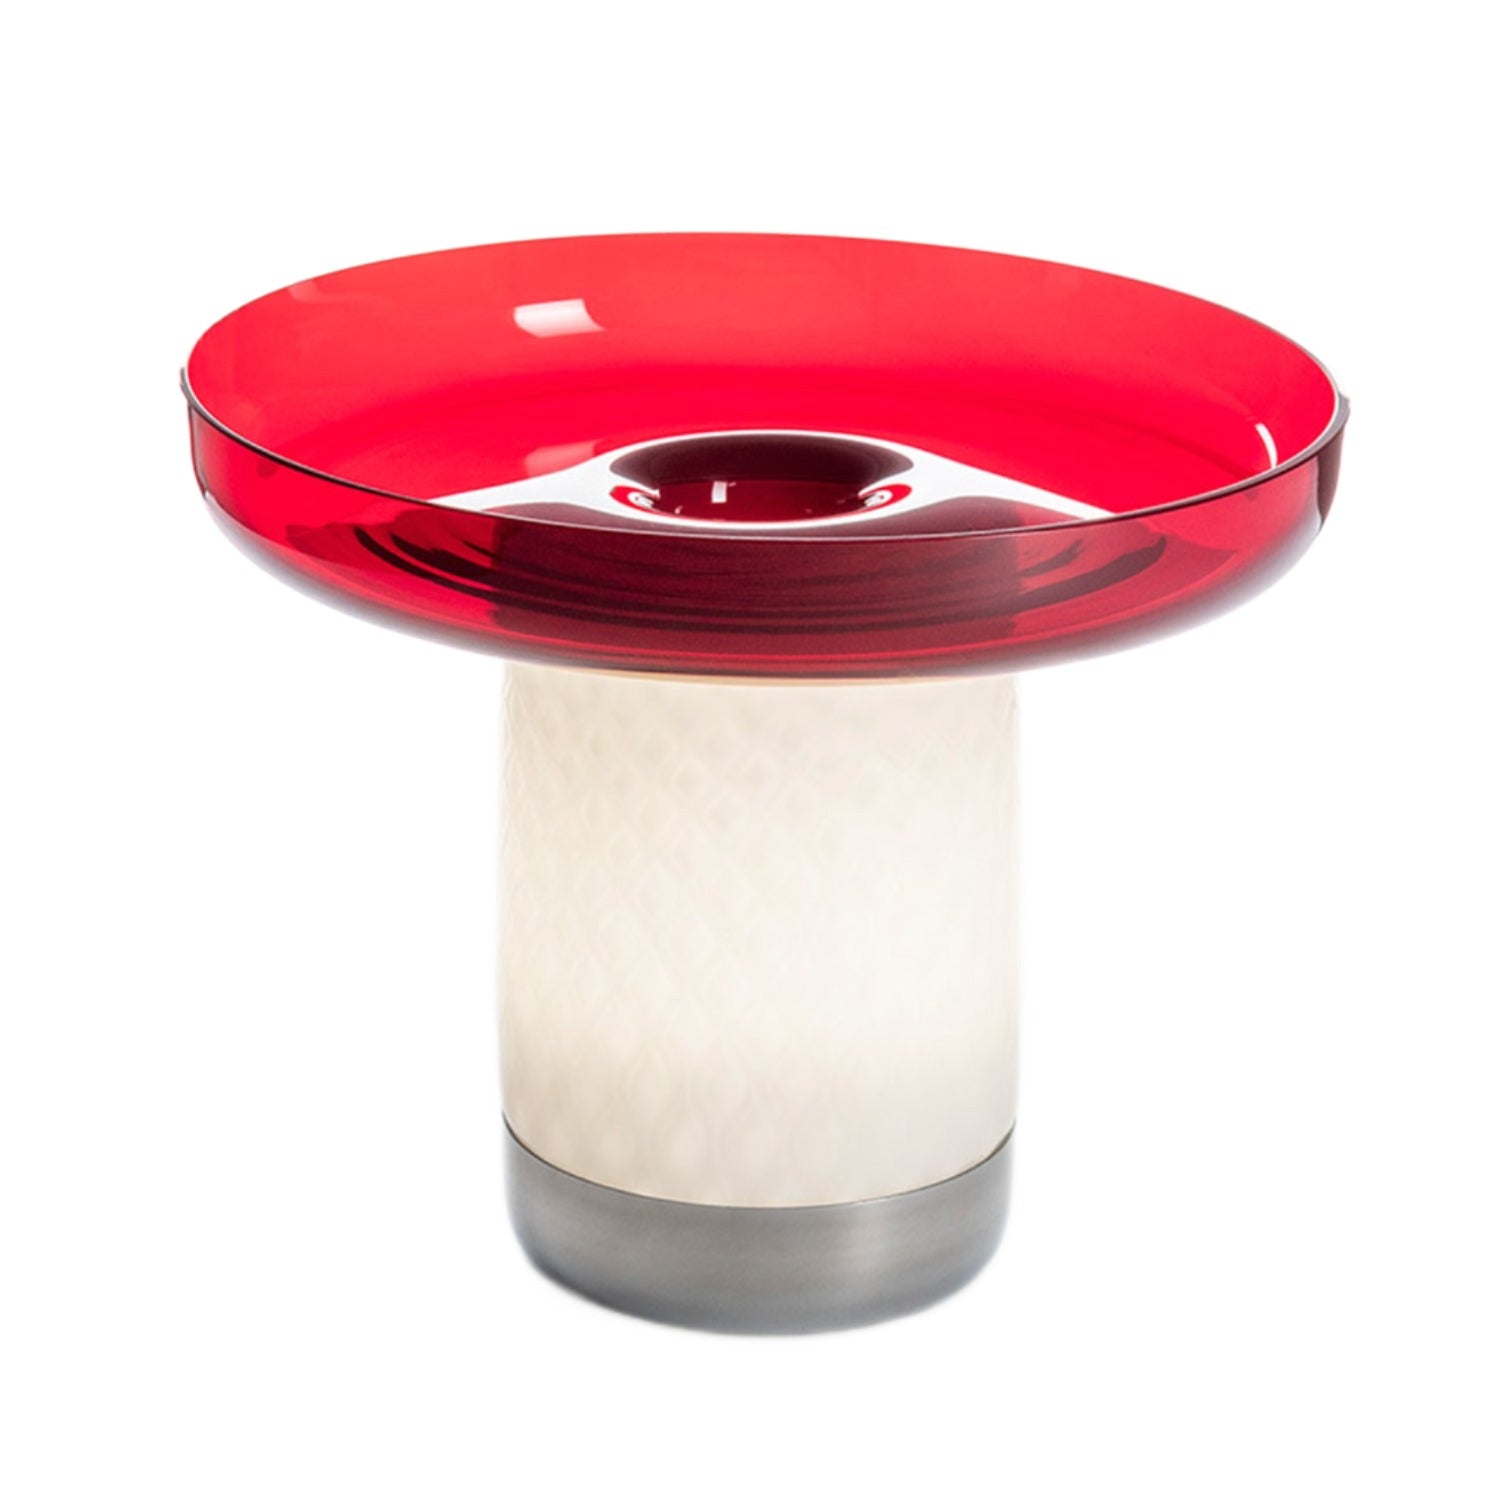 Artemide Bonta Plate Portable Lamp in Red